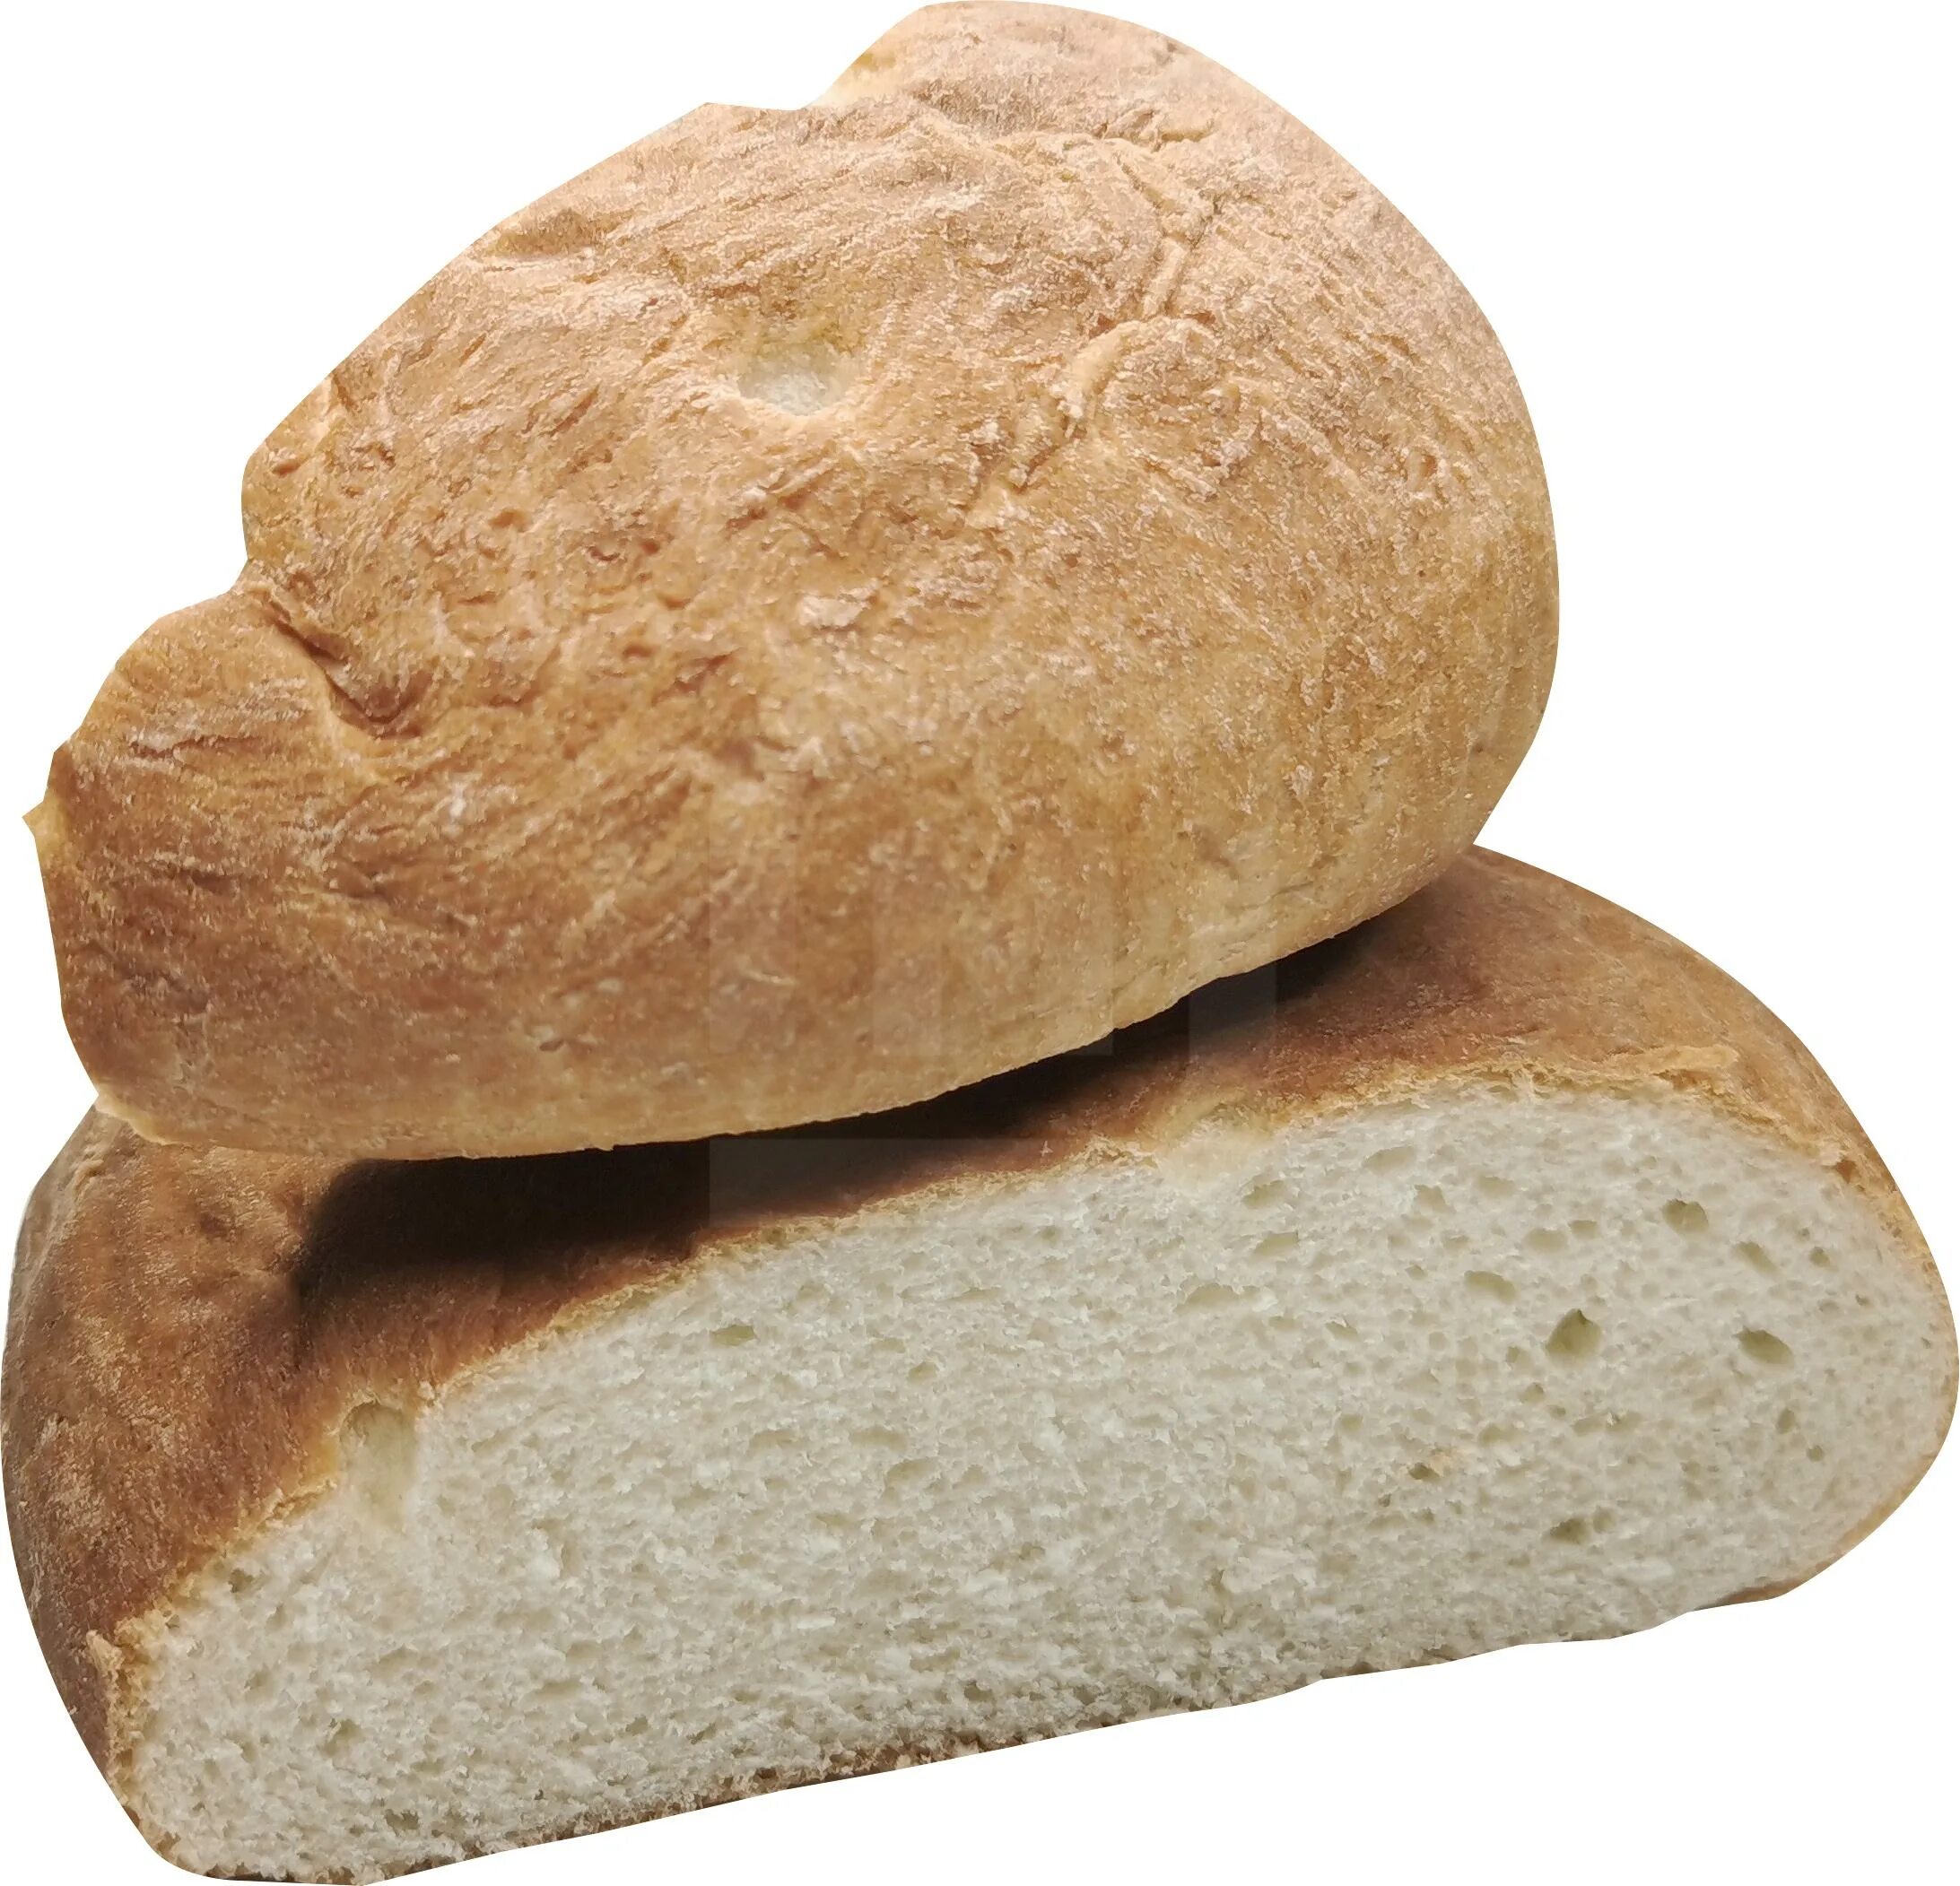 Подовый хлеб это какой